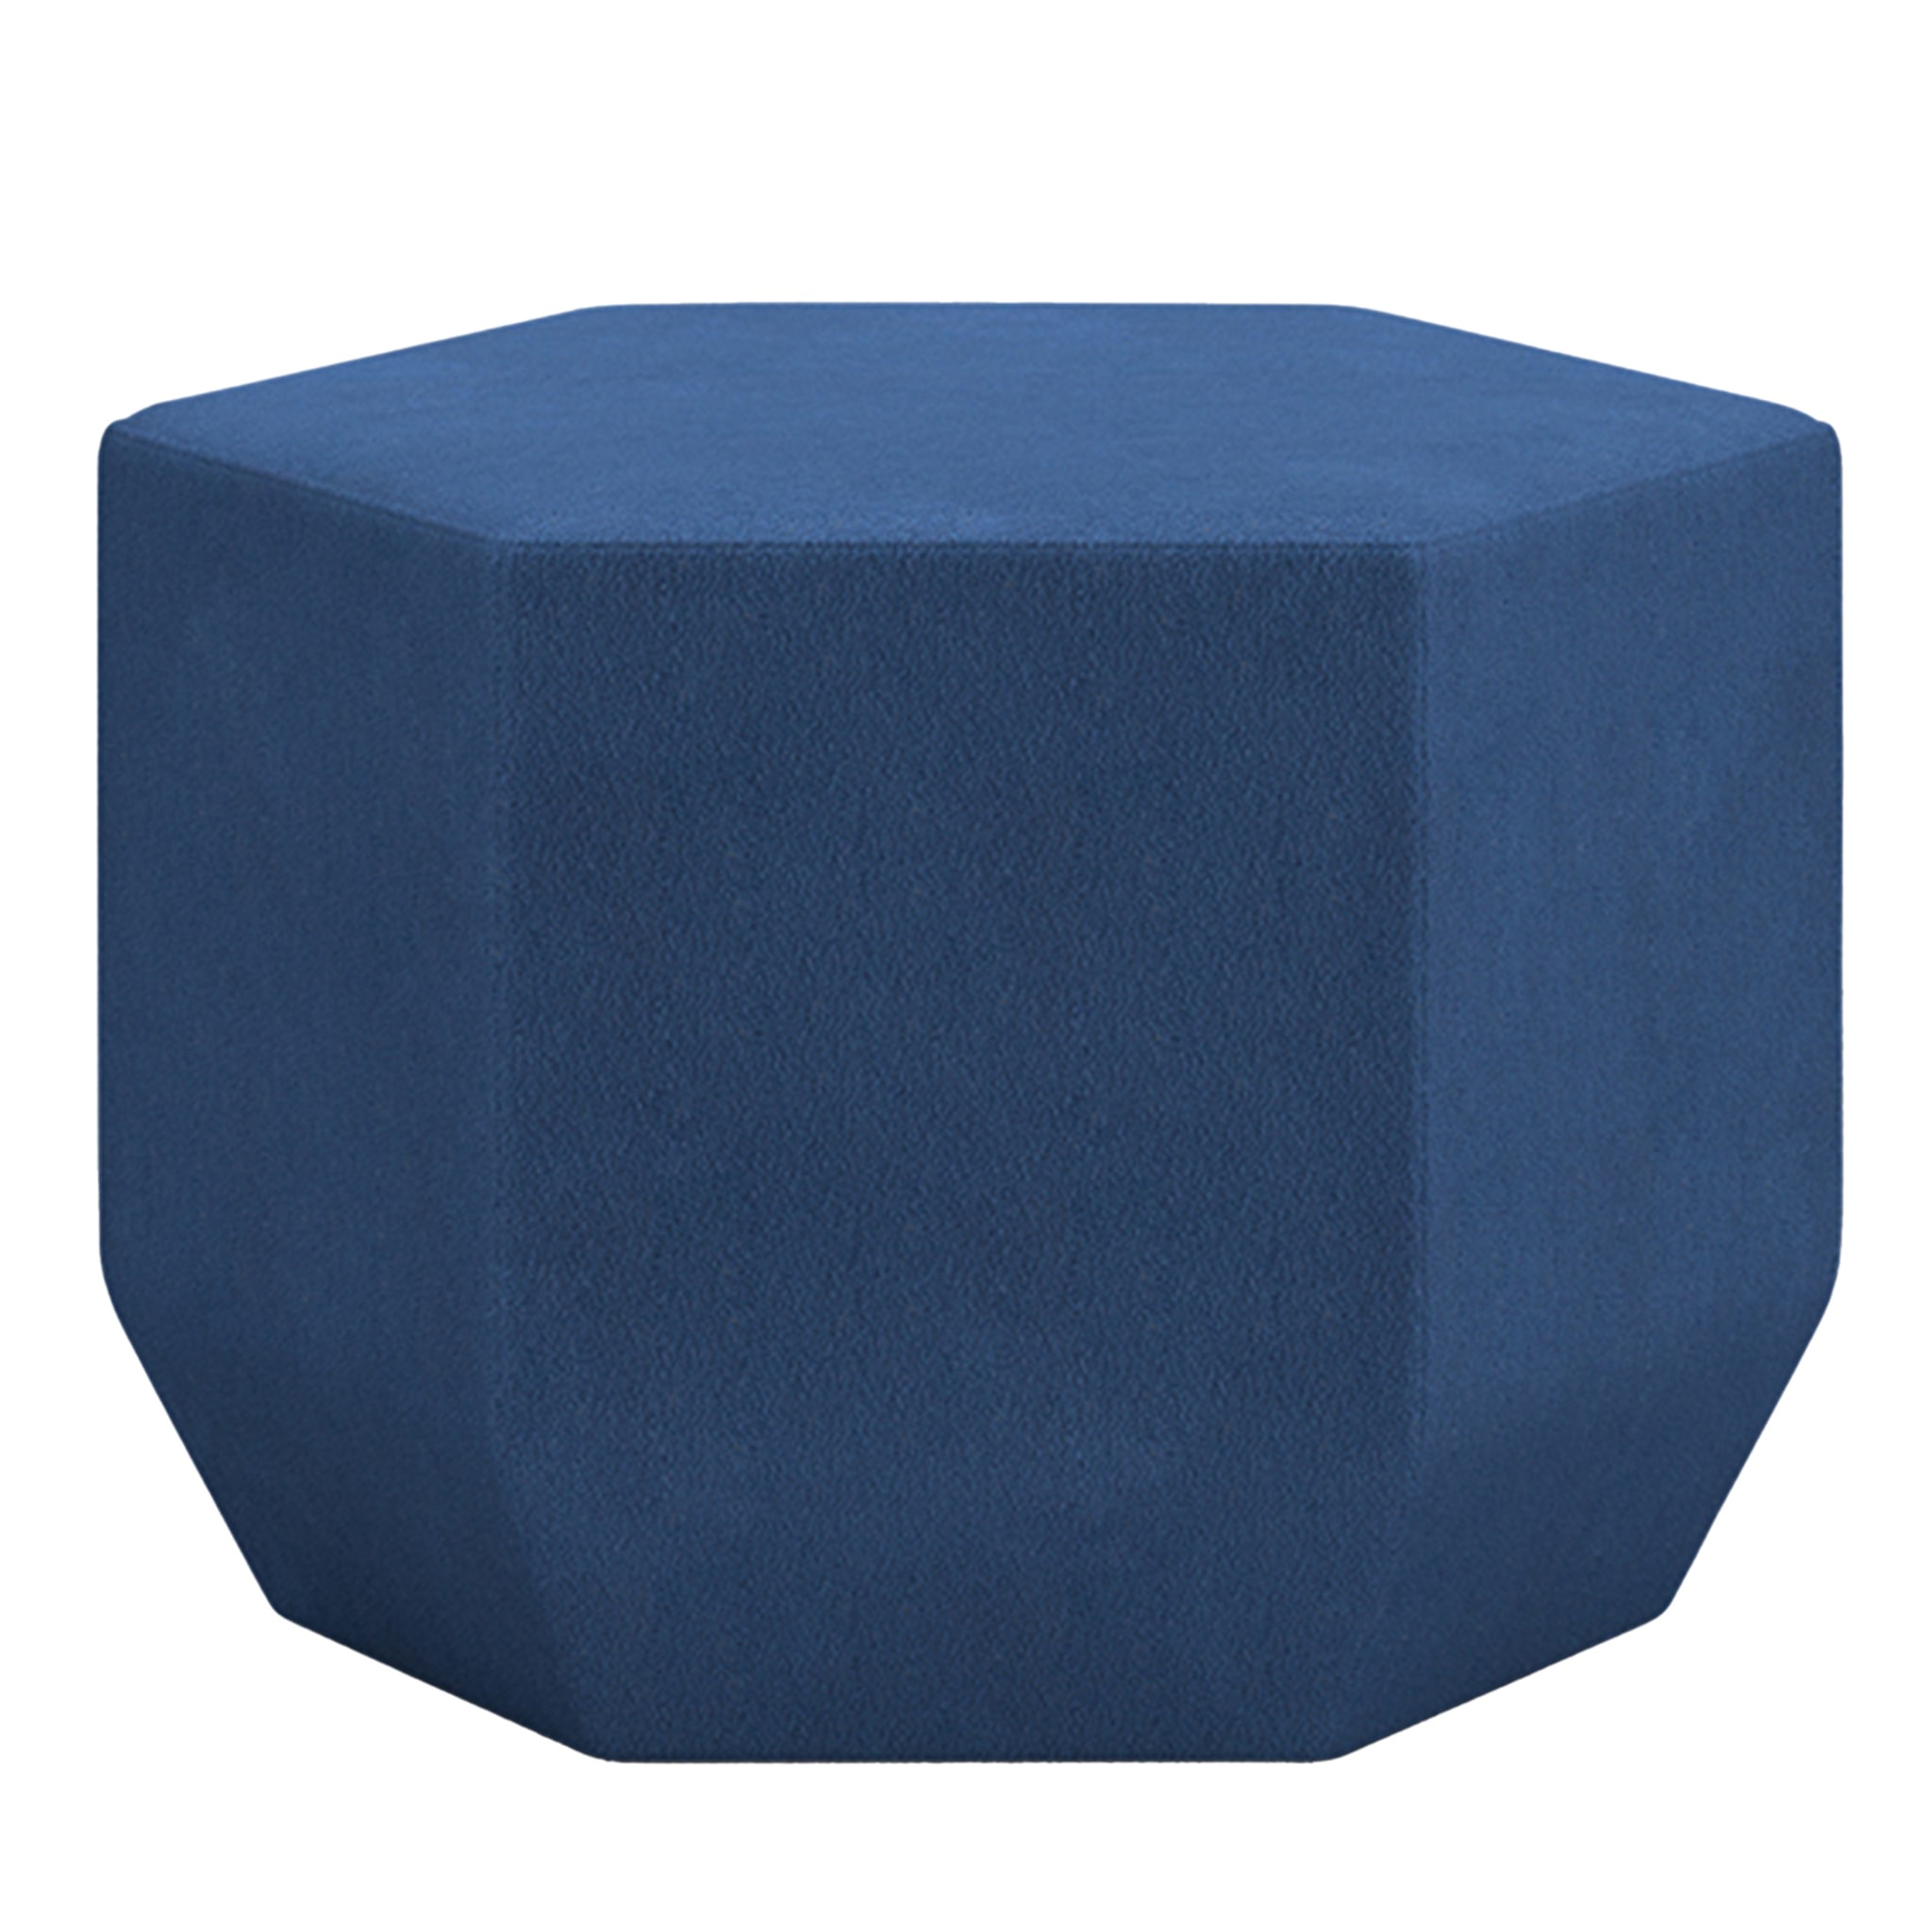 Tigram Petit Pouf Hexagonal Bleu par Italo Pertichini - Vue principale